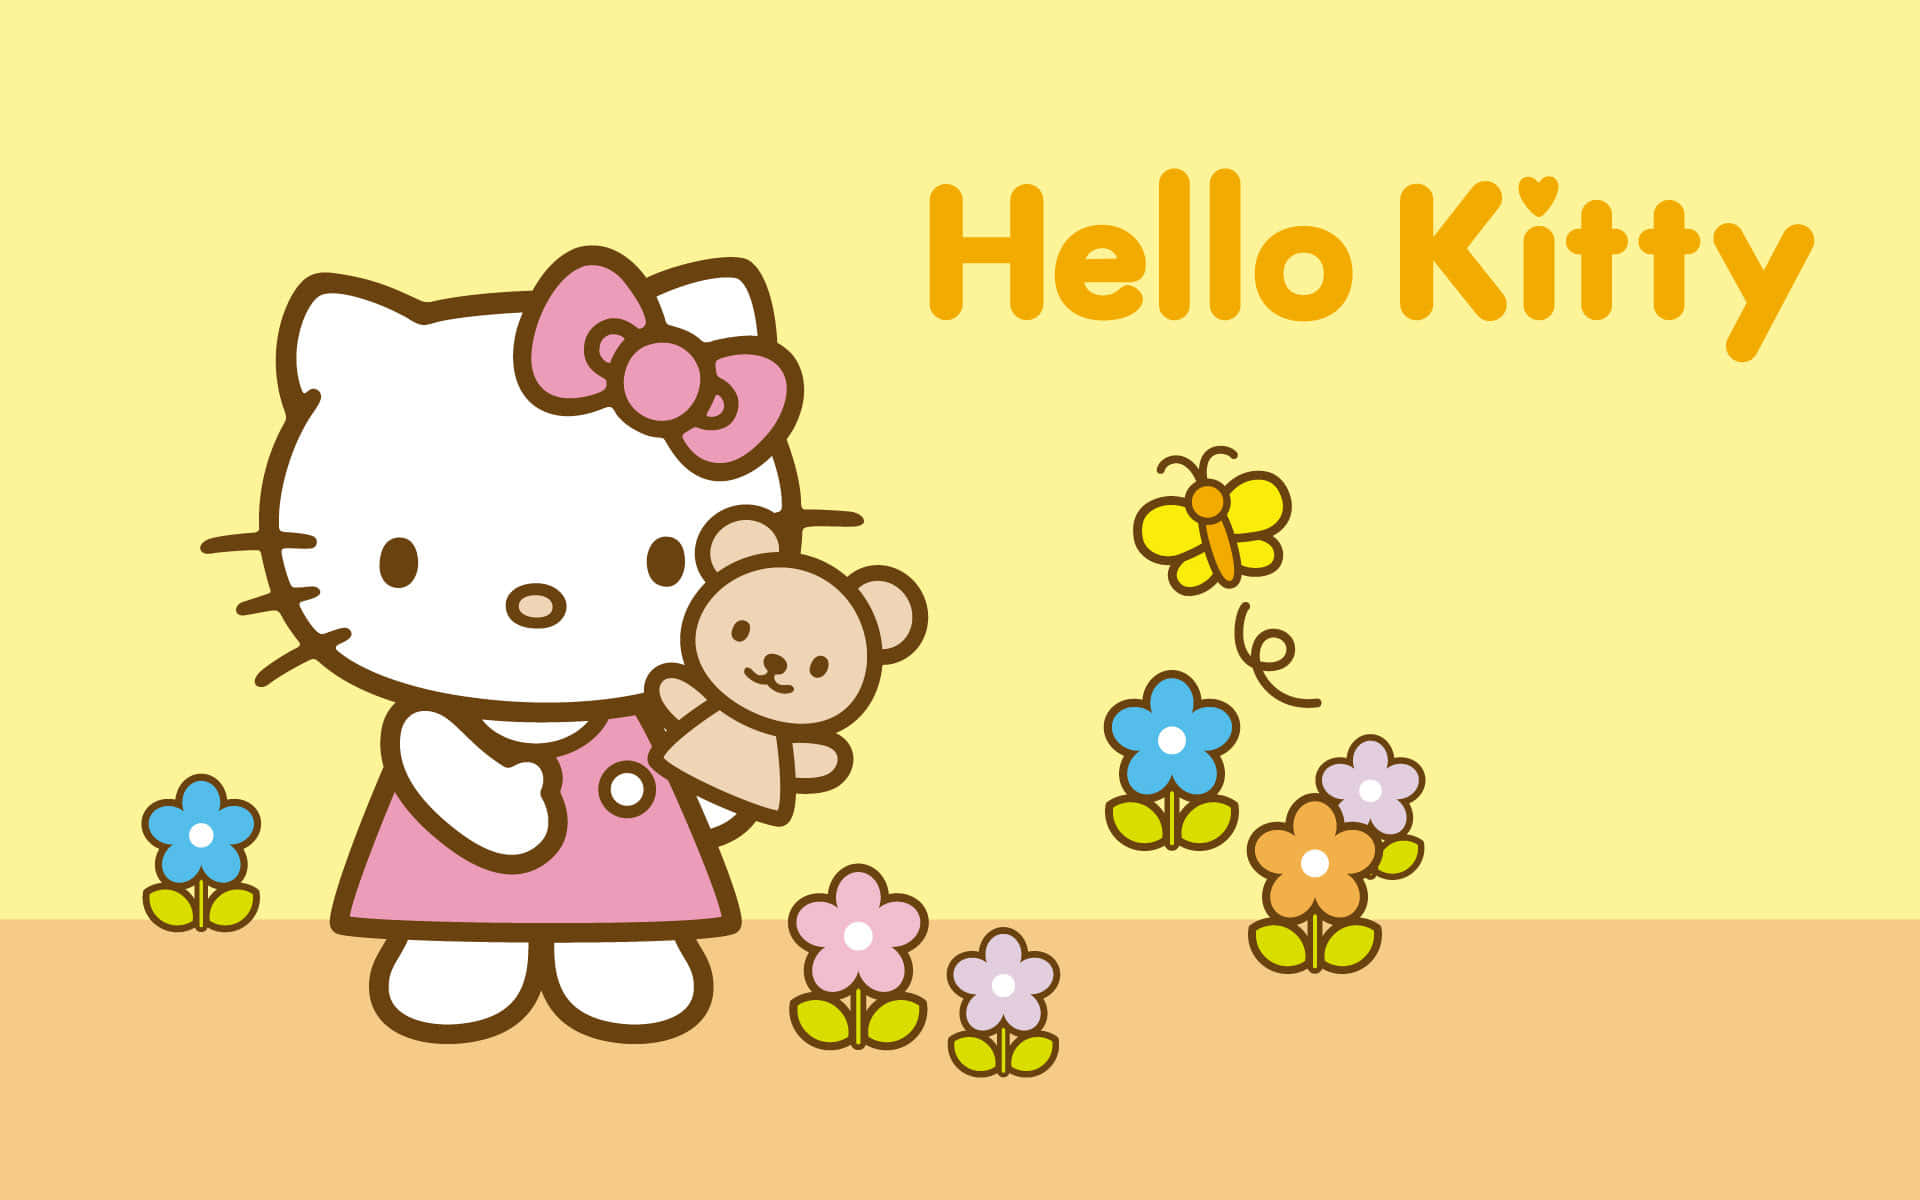 Gebensie Ihrem Desktop Mit Dem Hello Kitty Pc Ein Lustiges Makeover. Wallpaper